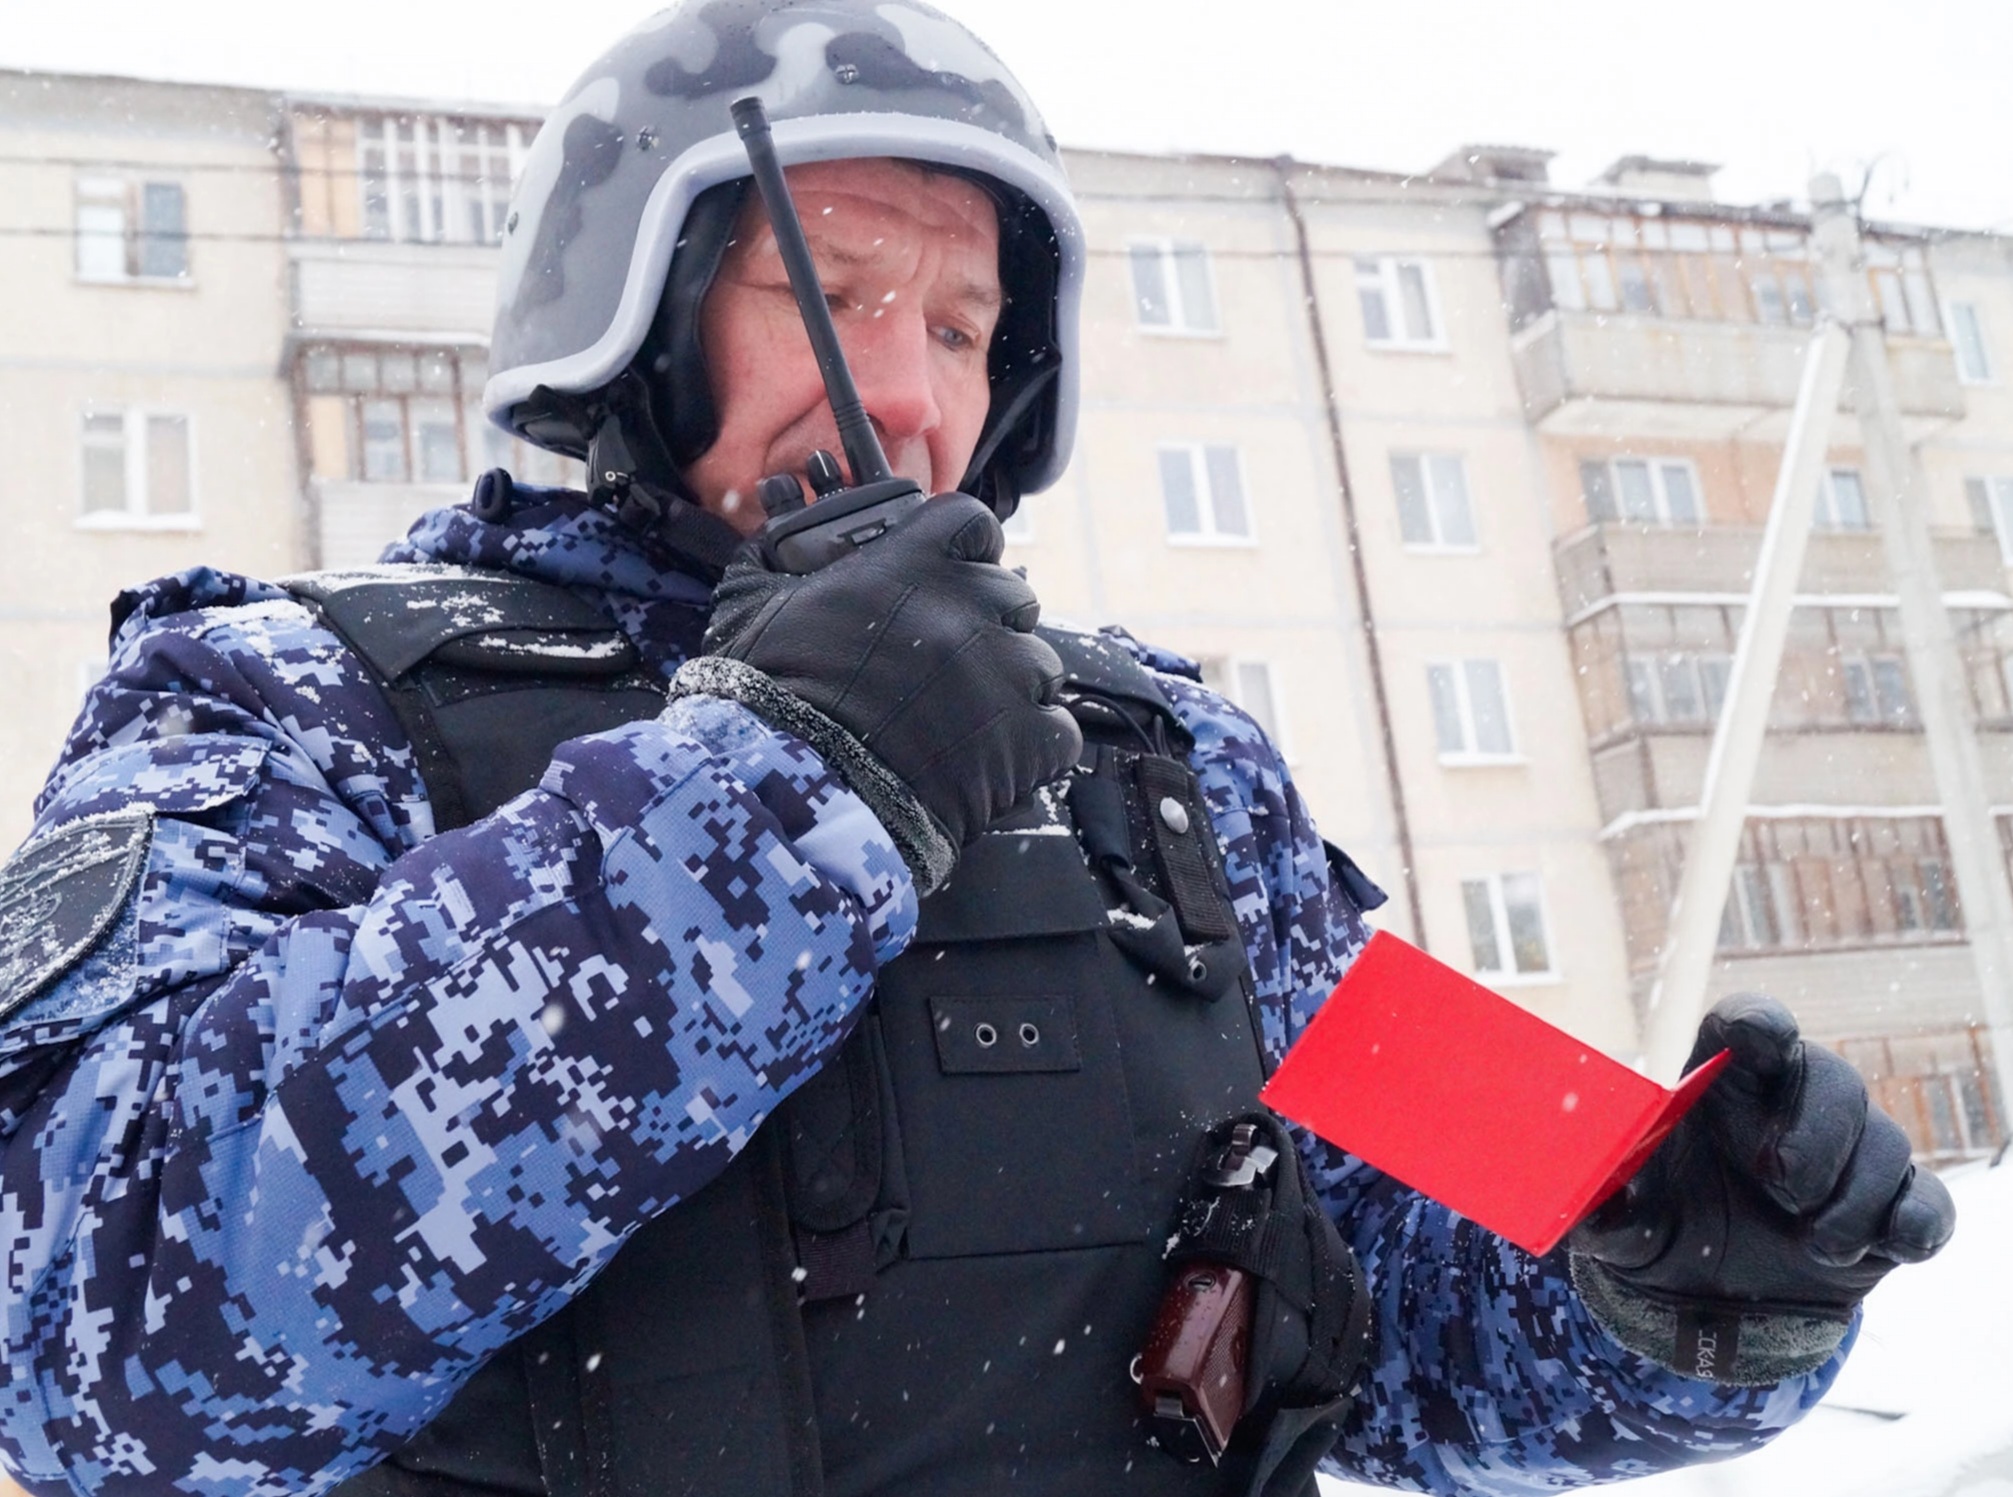 В Йошкар-Оле задержали мужчину, похитившего цепочку стоимостью 50 тысяч рублей